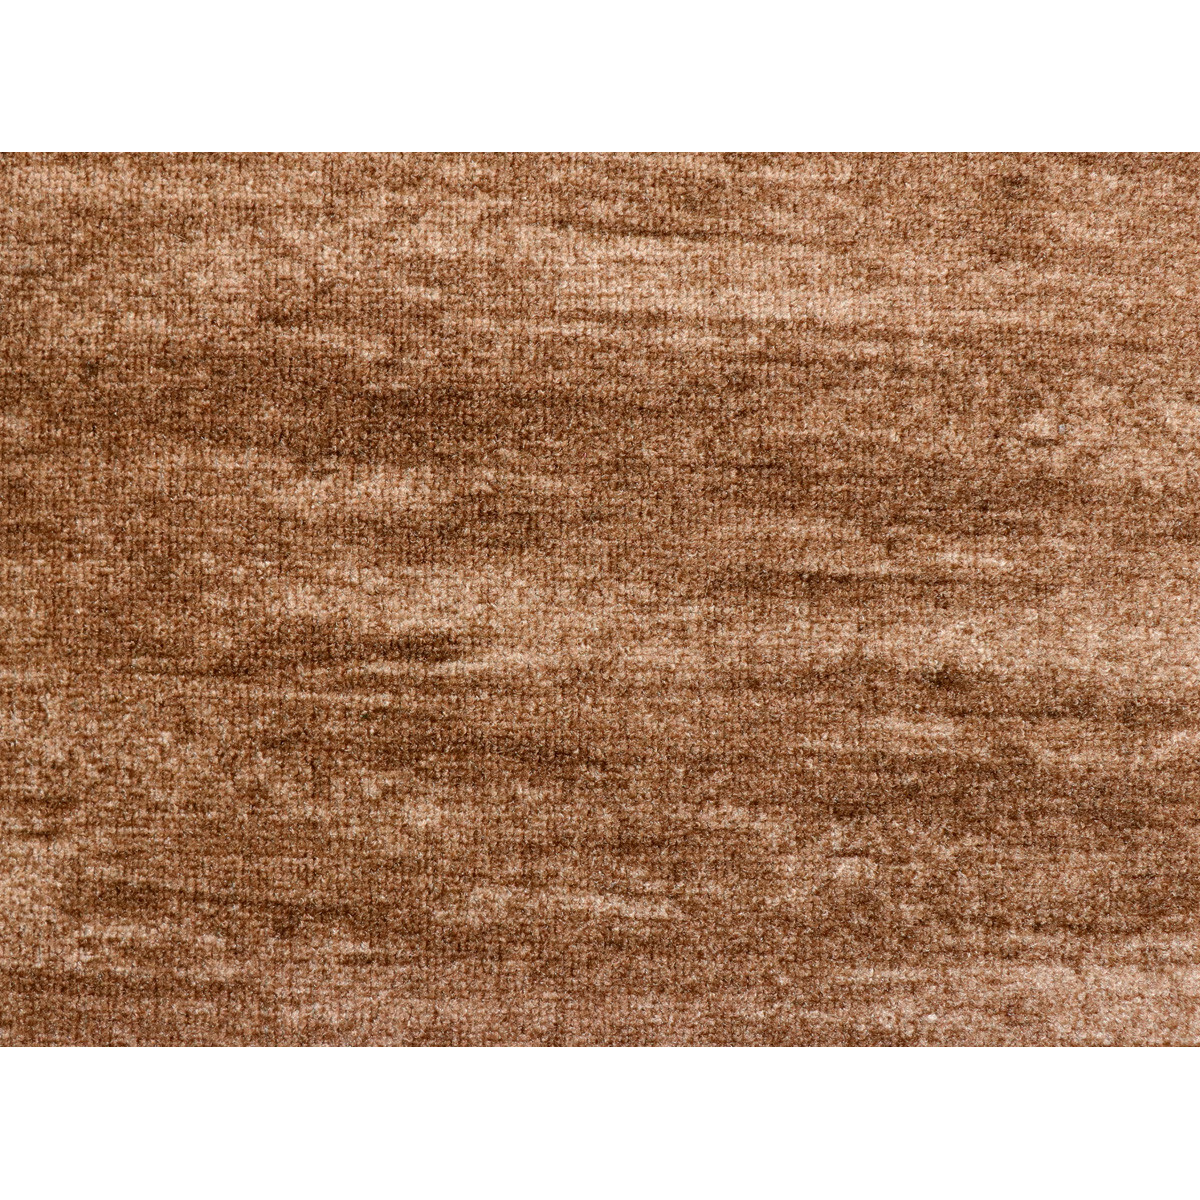 AKCE: 100x180 cm  Metrážový koberec Tropical 40